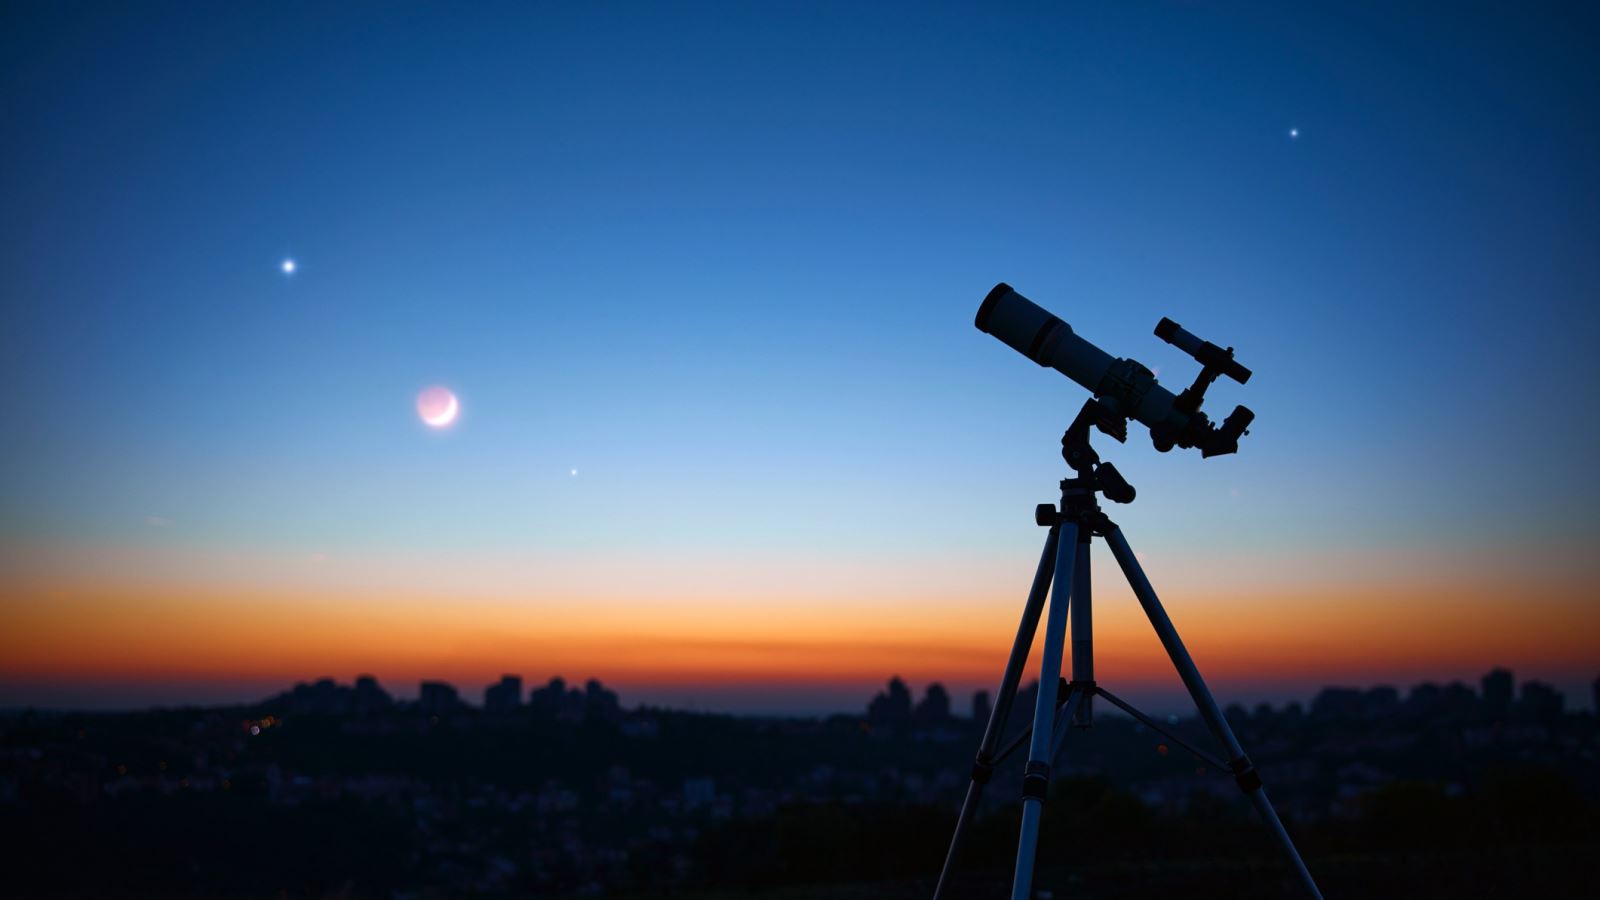 Ngày 28-3 có thể ngắm 5 hành tinh thẳng hàng tỏa sáng trên bầu trời bằng mắt thường